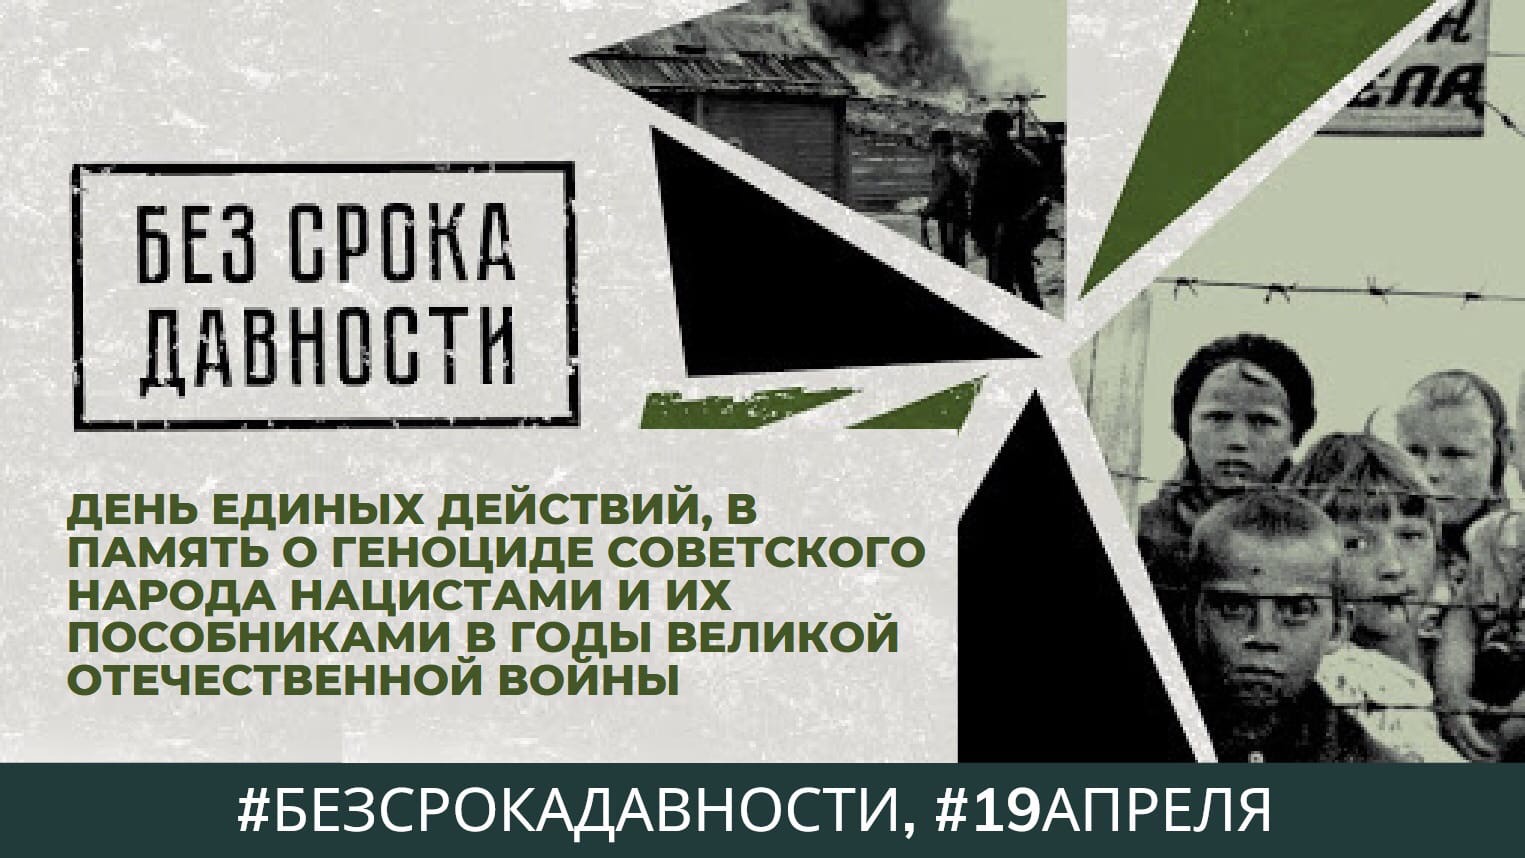 19 апреля — День единых действий в память о геноциде советского народа нацистами и их пособниками в годы Великой Отечественной войны.